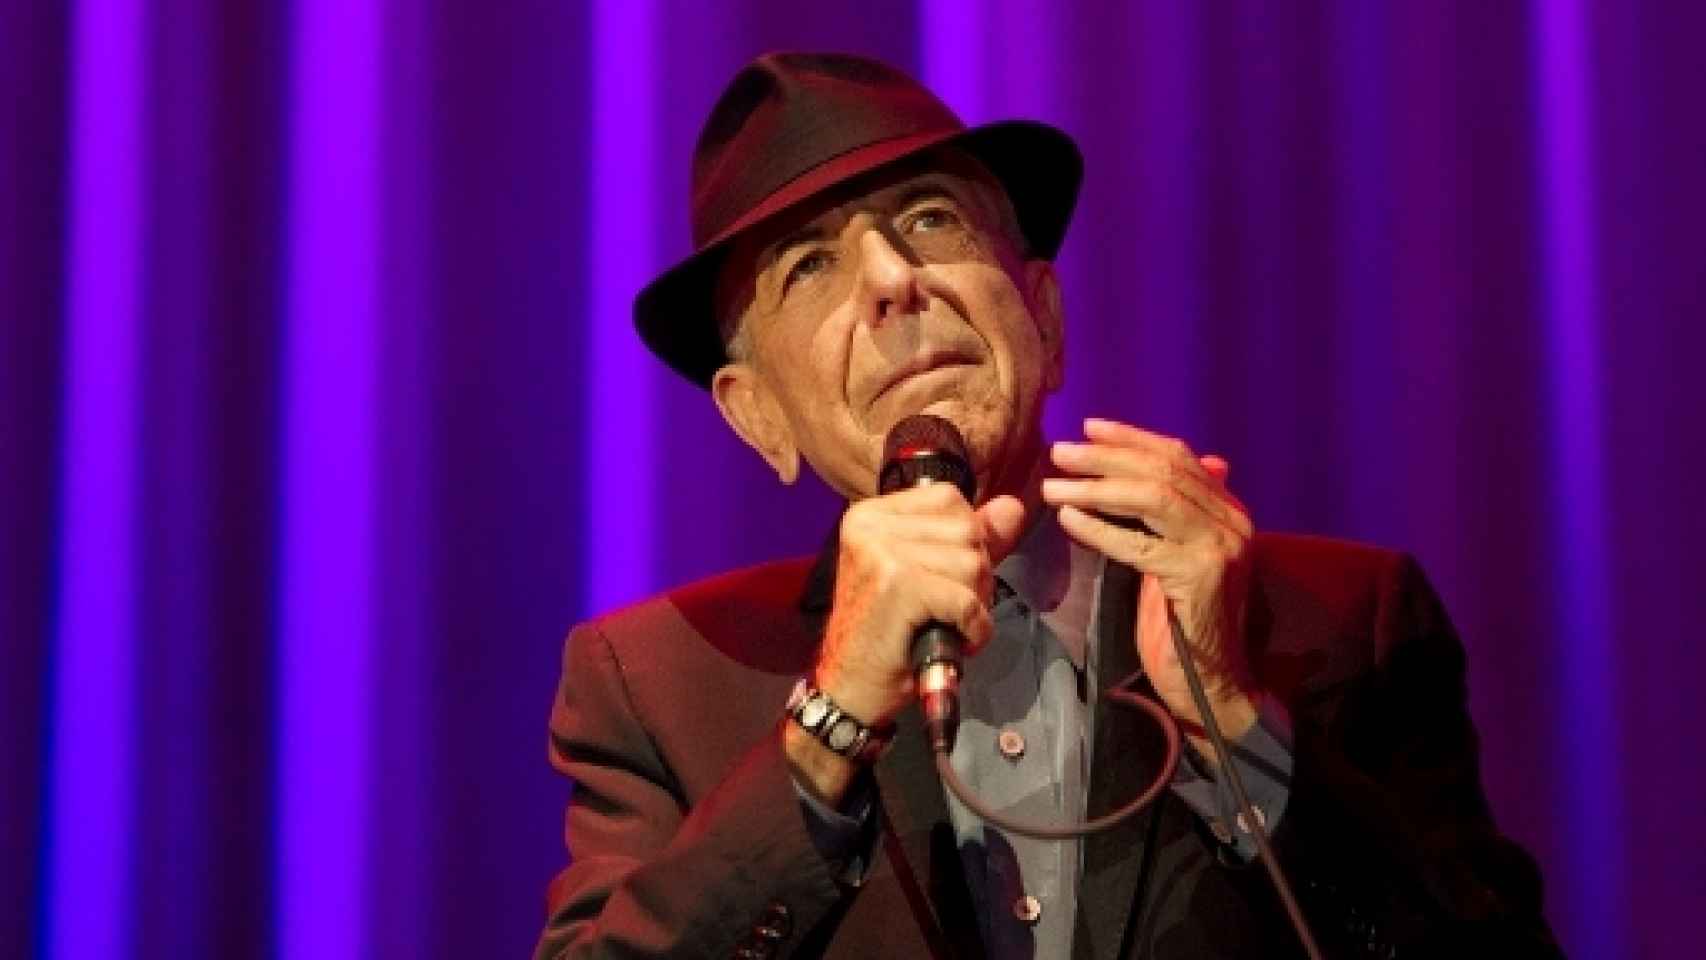 Image: Muere Leonard Cohen a los 82 años